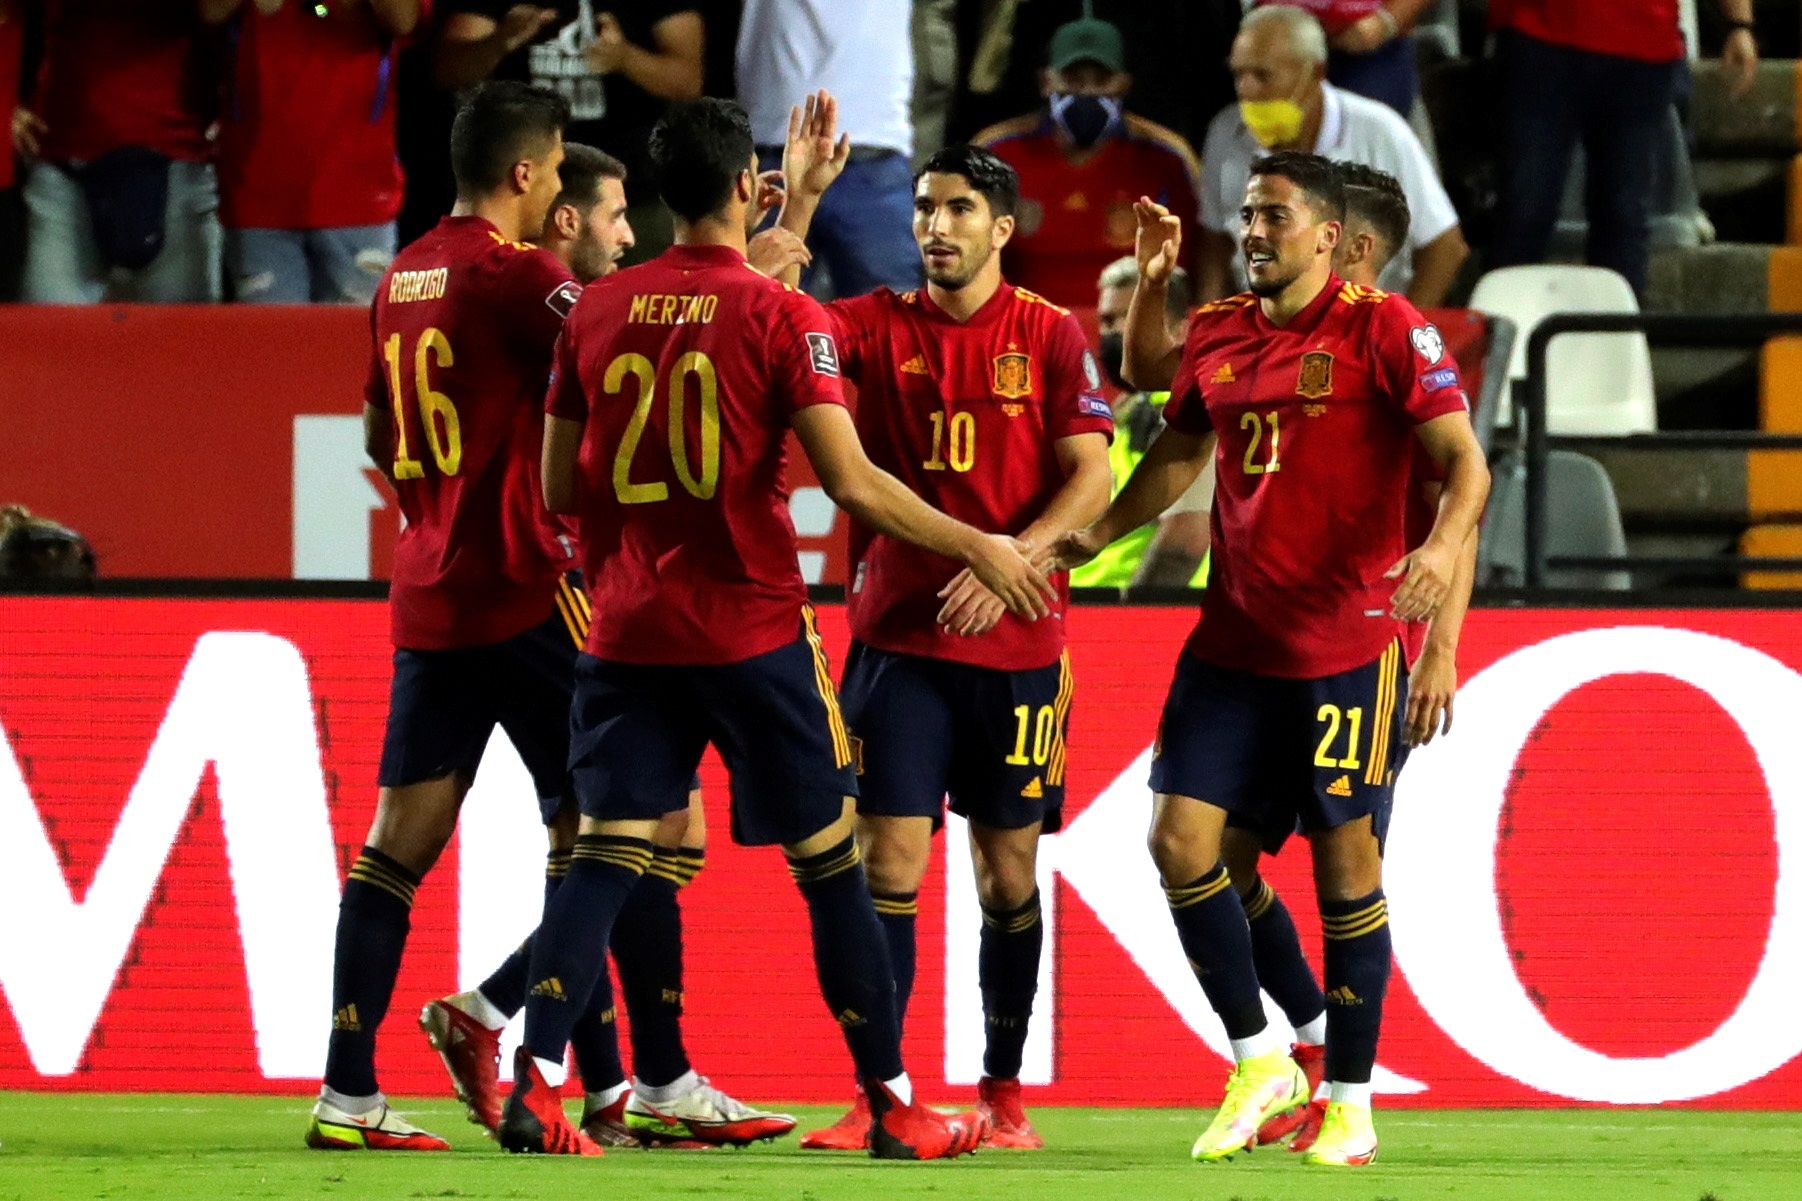 Los jugadores de la selección española de fútbol celebran el cuarto gol ante Georgia, durante el partido clasificatorio del Mundial Catar 2022 que disputaron este domingo en el estadio Nuevo Vivero, en Badajoz. (Foto Prensa Libre: EFE)